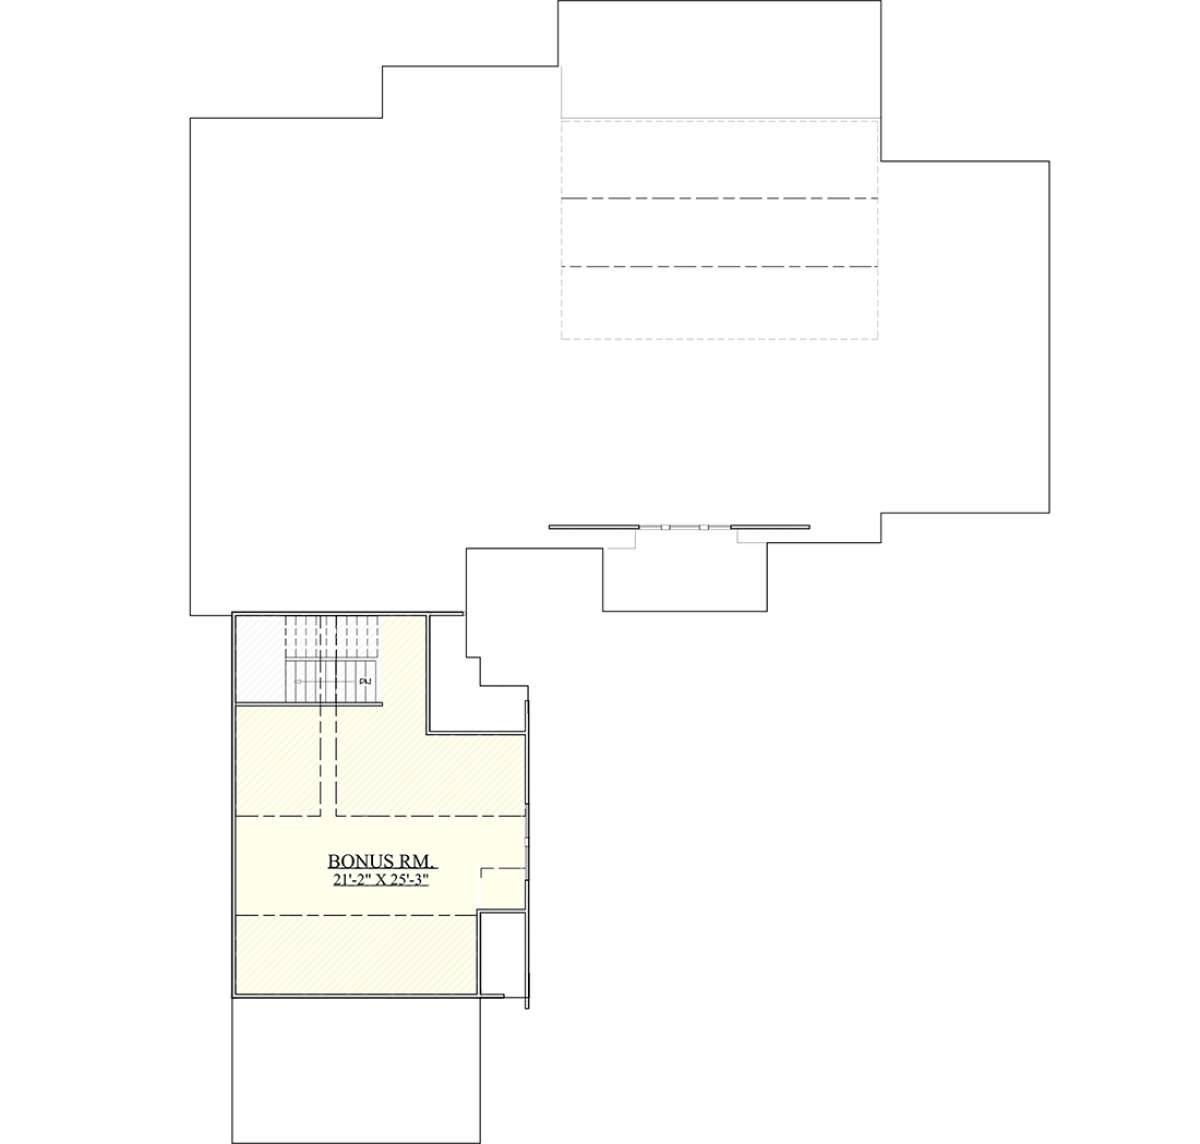 Bonus Room for House Plan #6939-00017